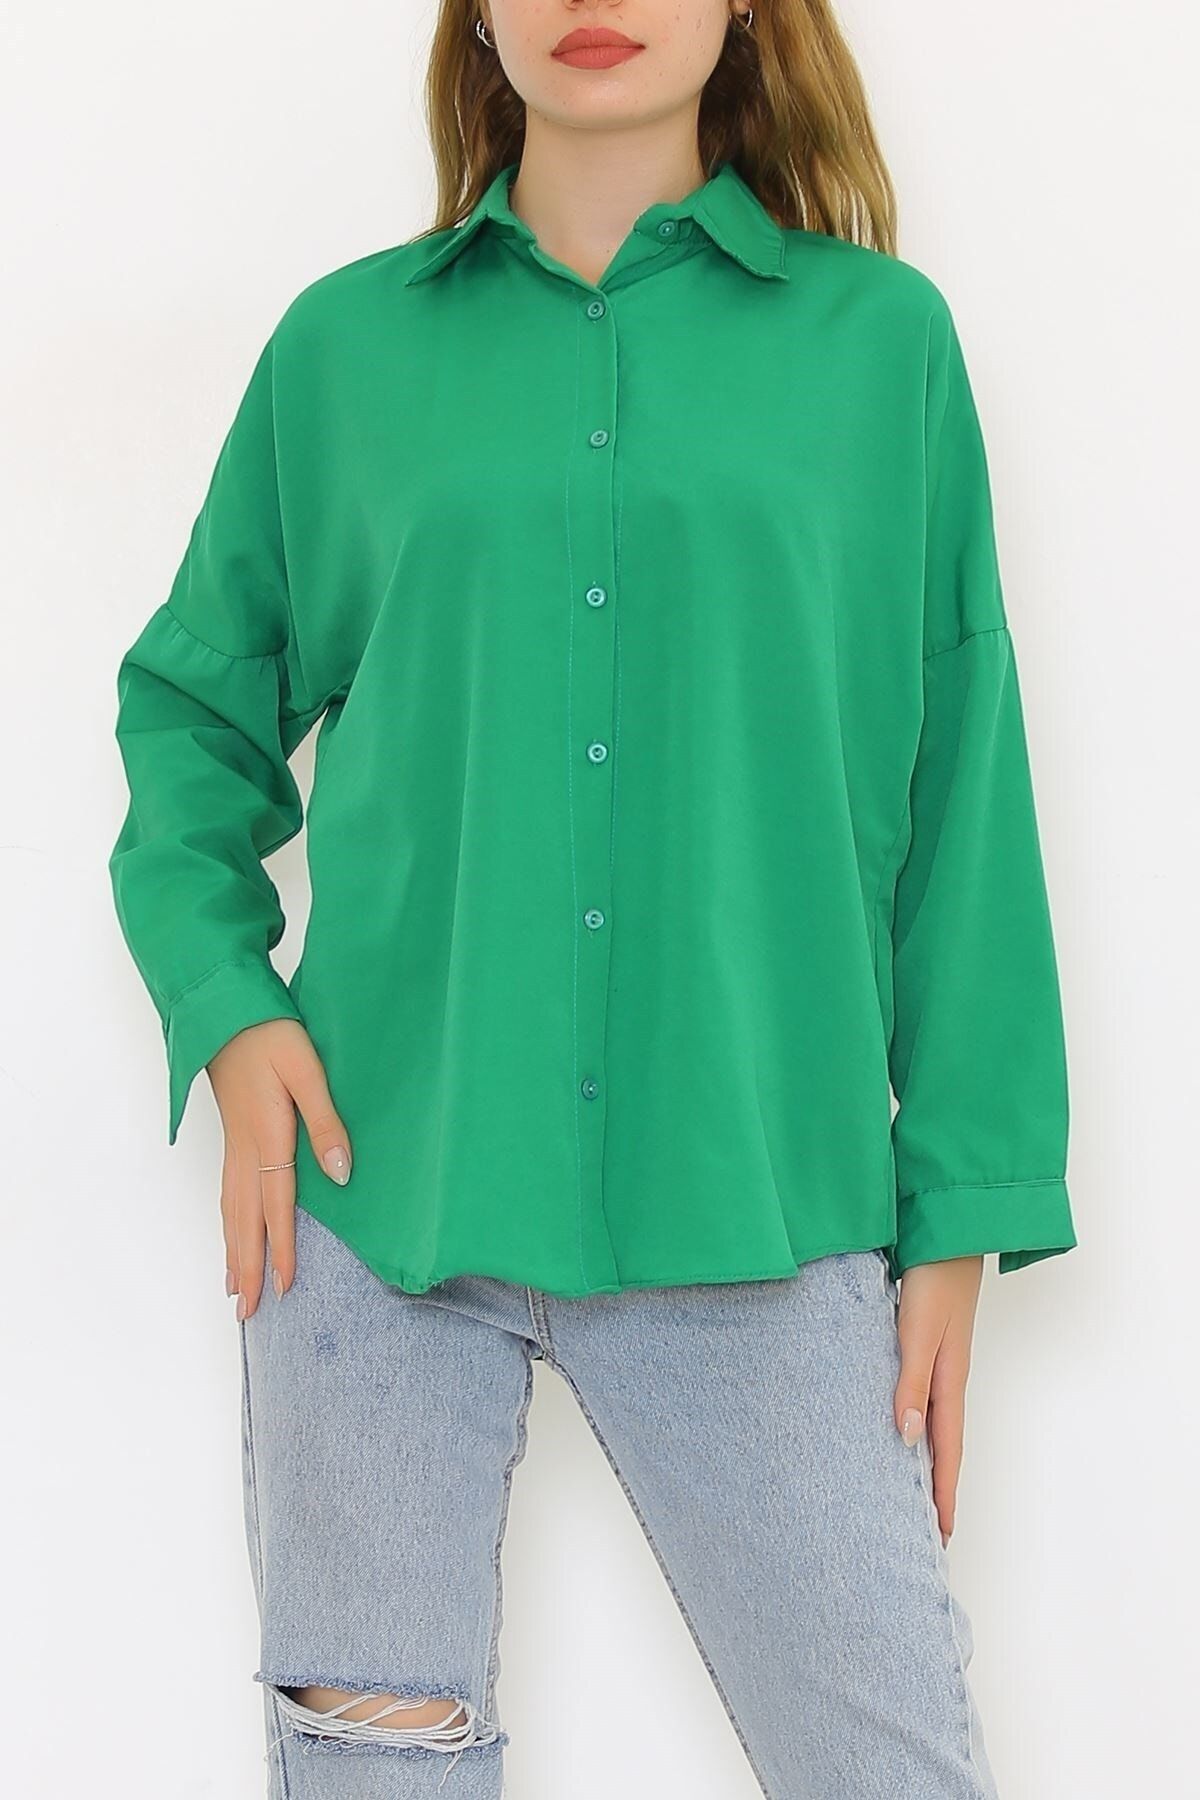 Modaymış Salaş Gömlek Yeşil1 - 293.1247.